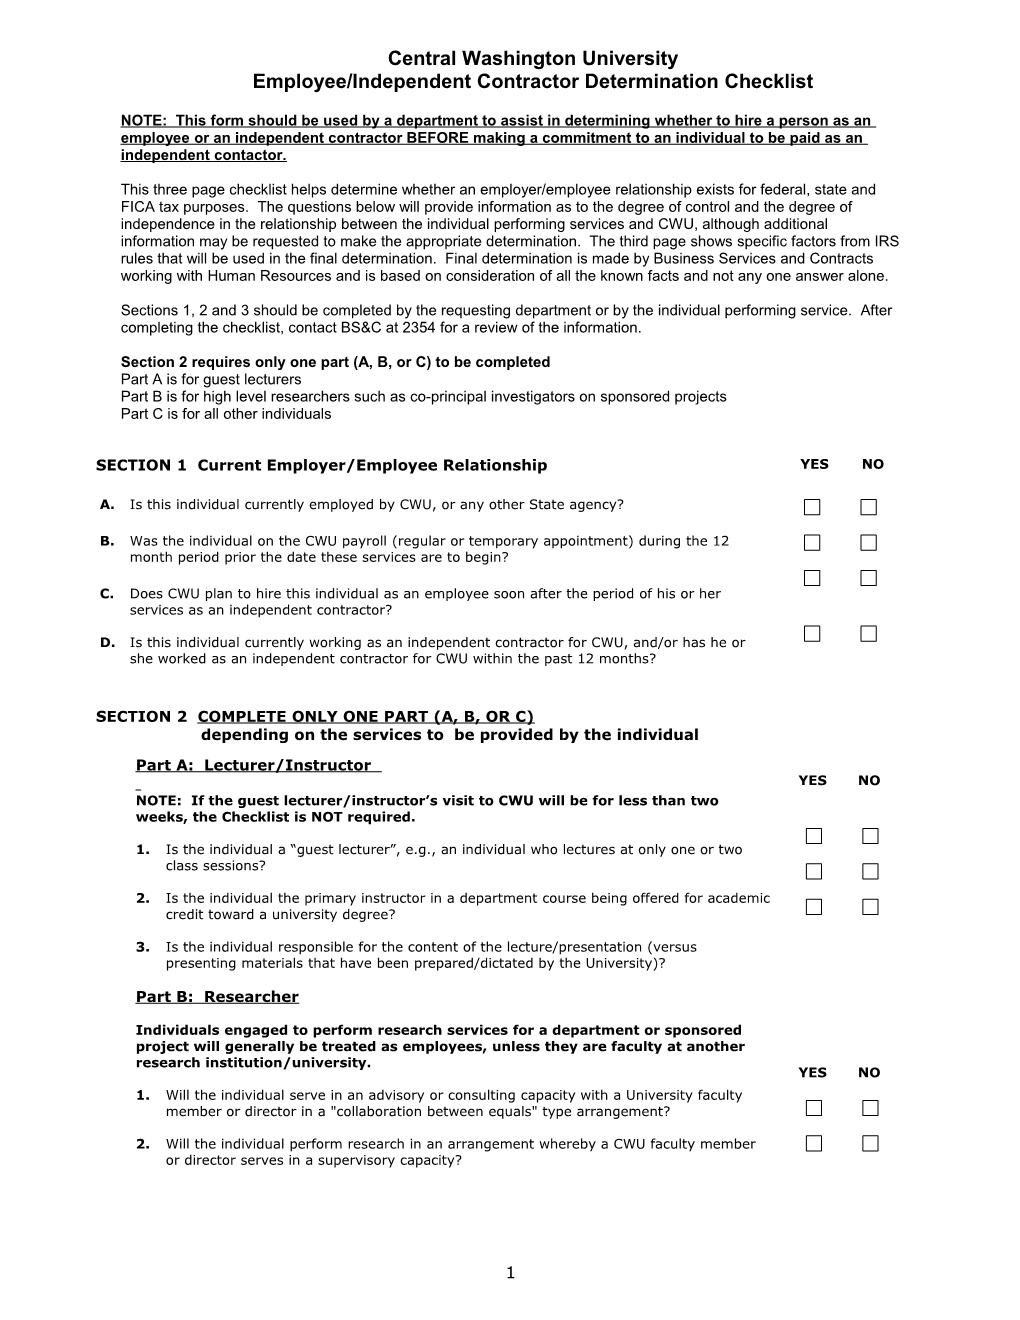 Employee/Independent Contractor Determination Checklist